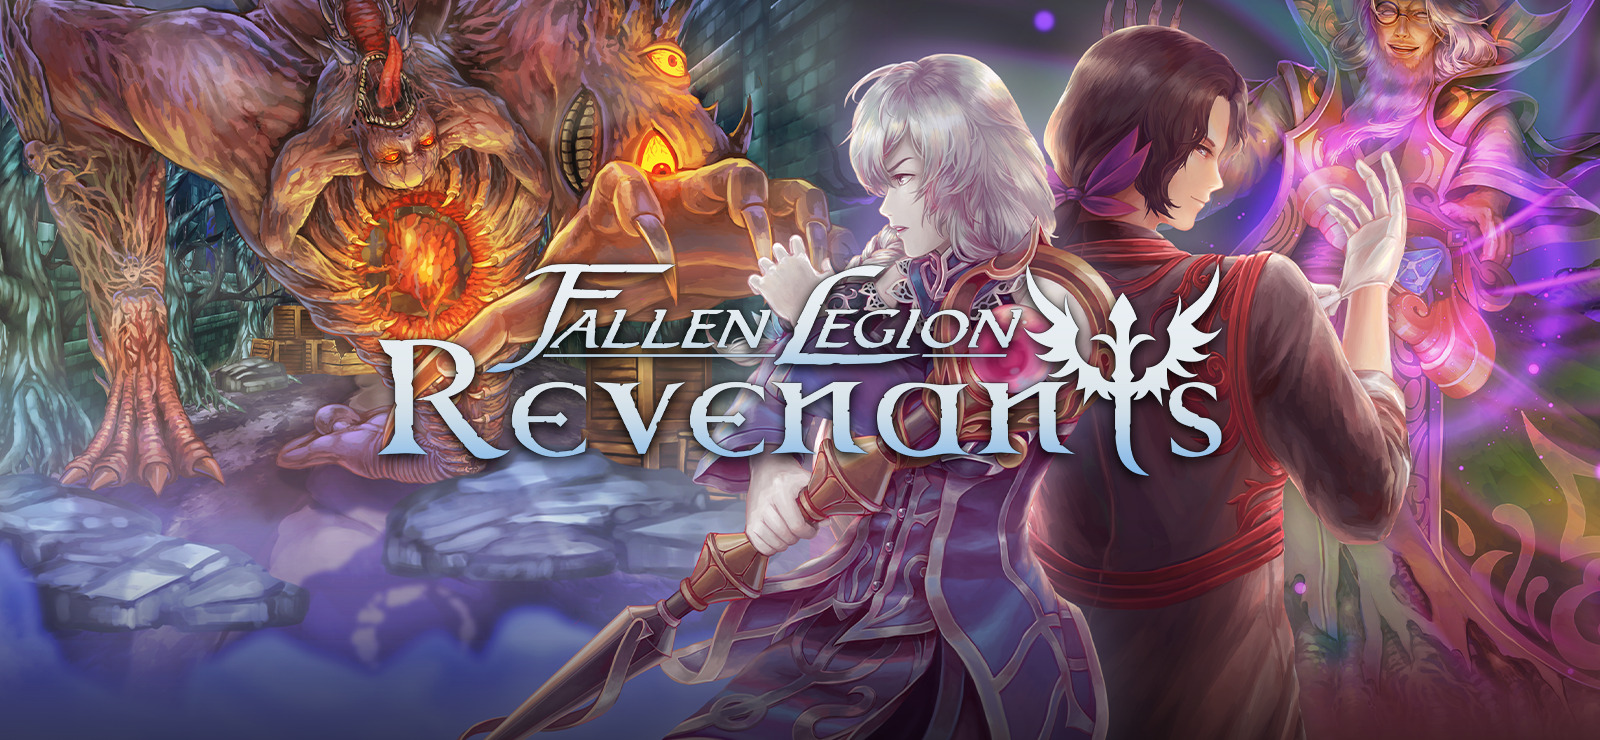 Fallen Legion Revenants for windows download